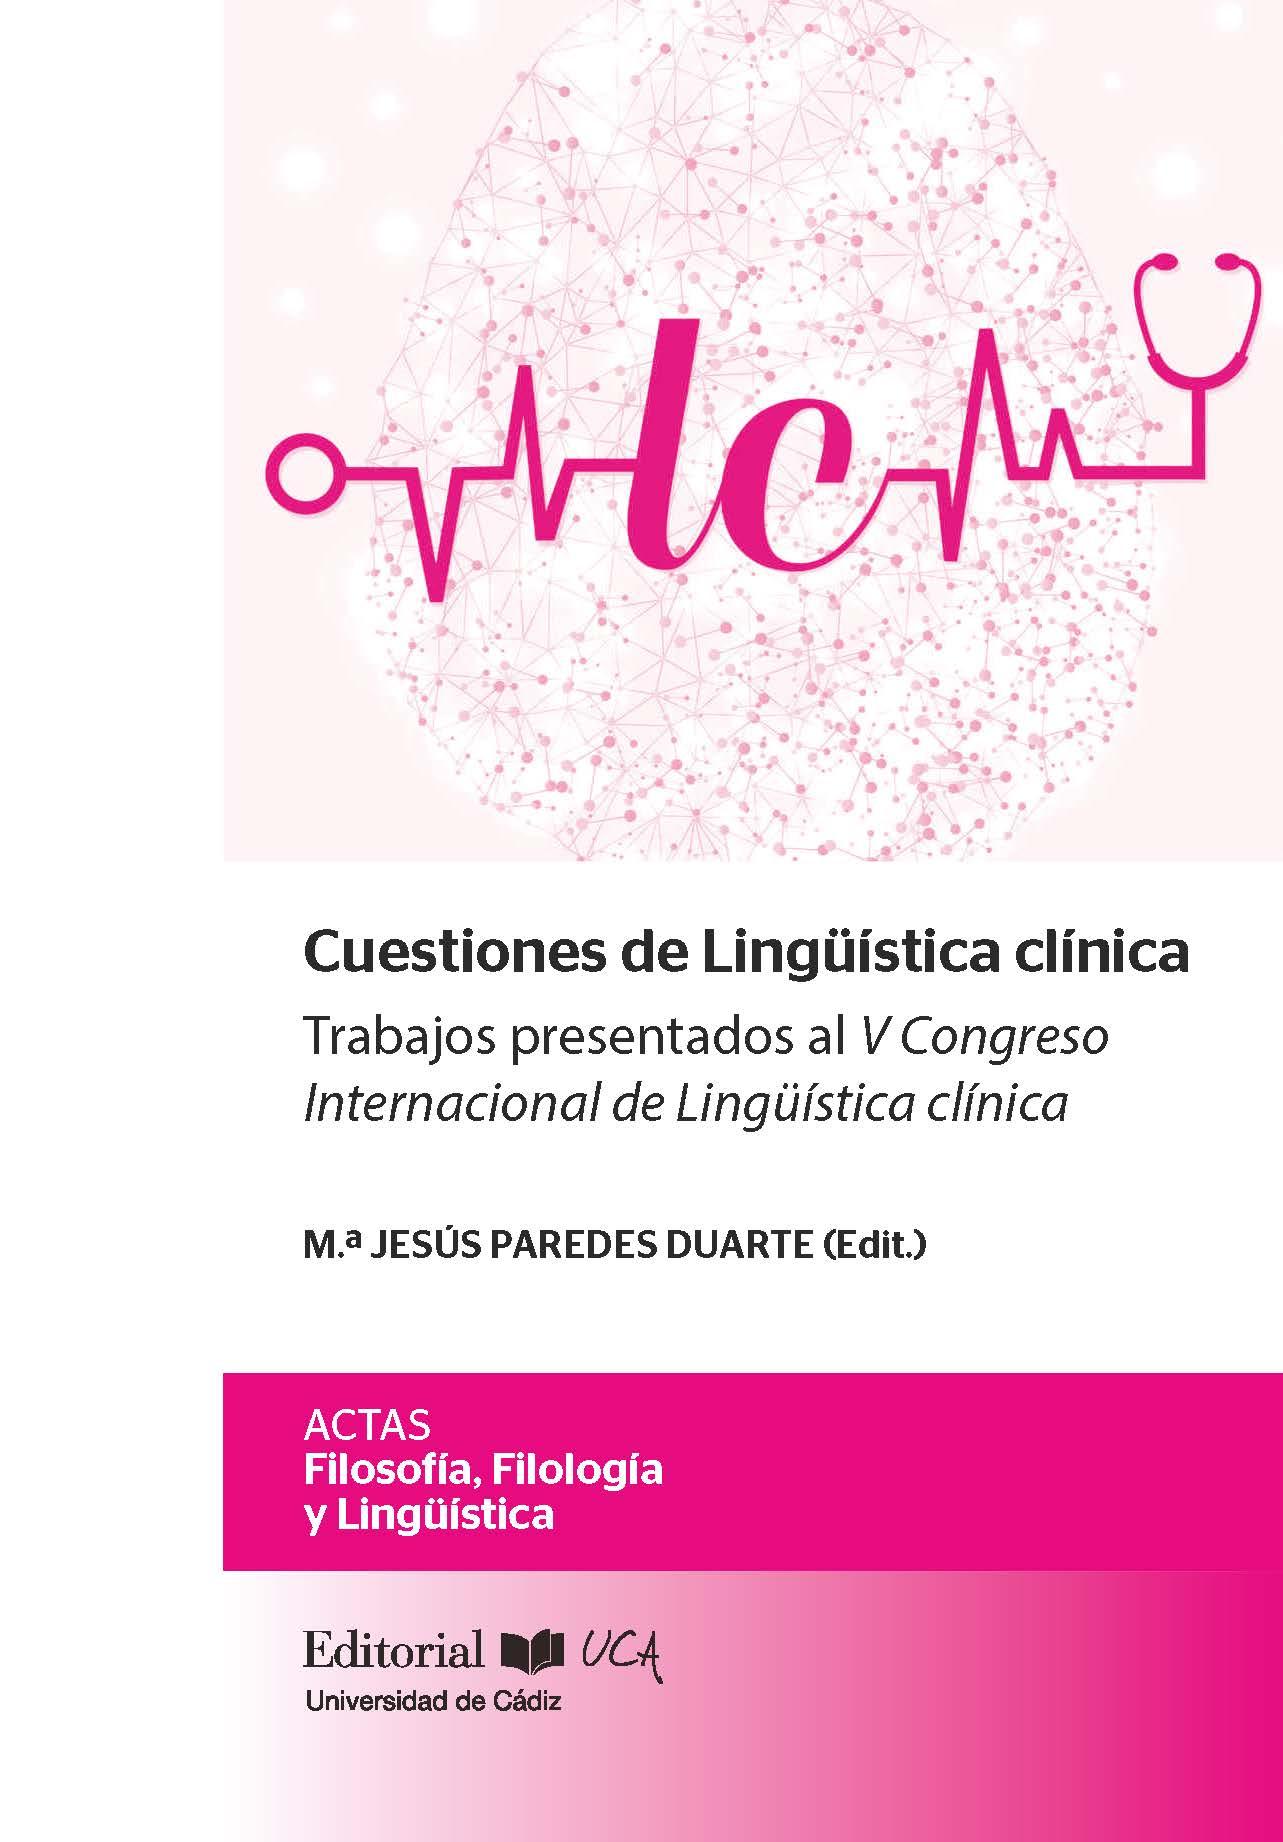 Imagen de portada del libro Cuestiones de Lingüística clínica